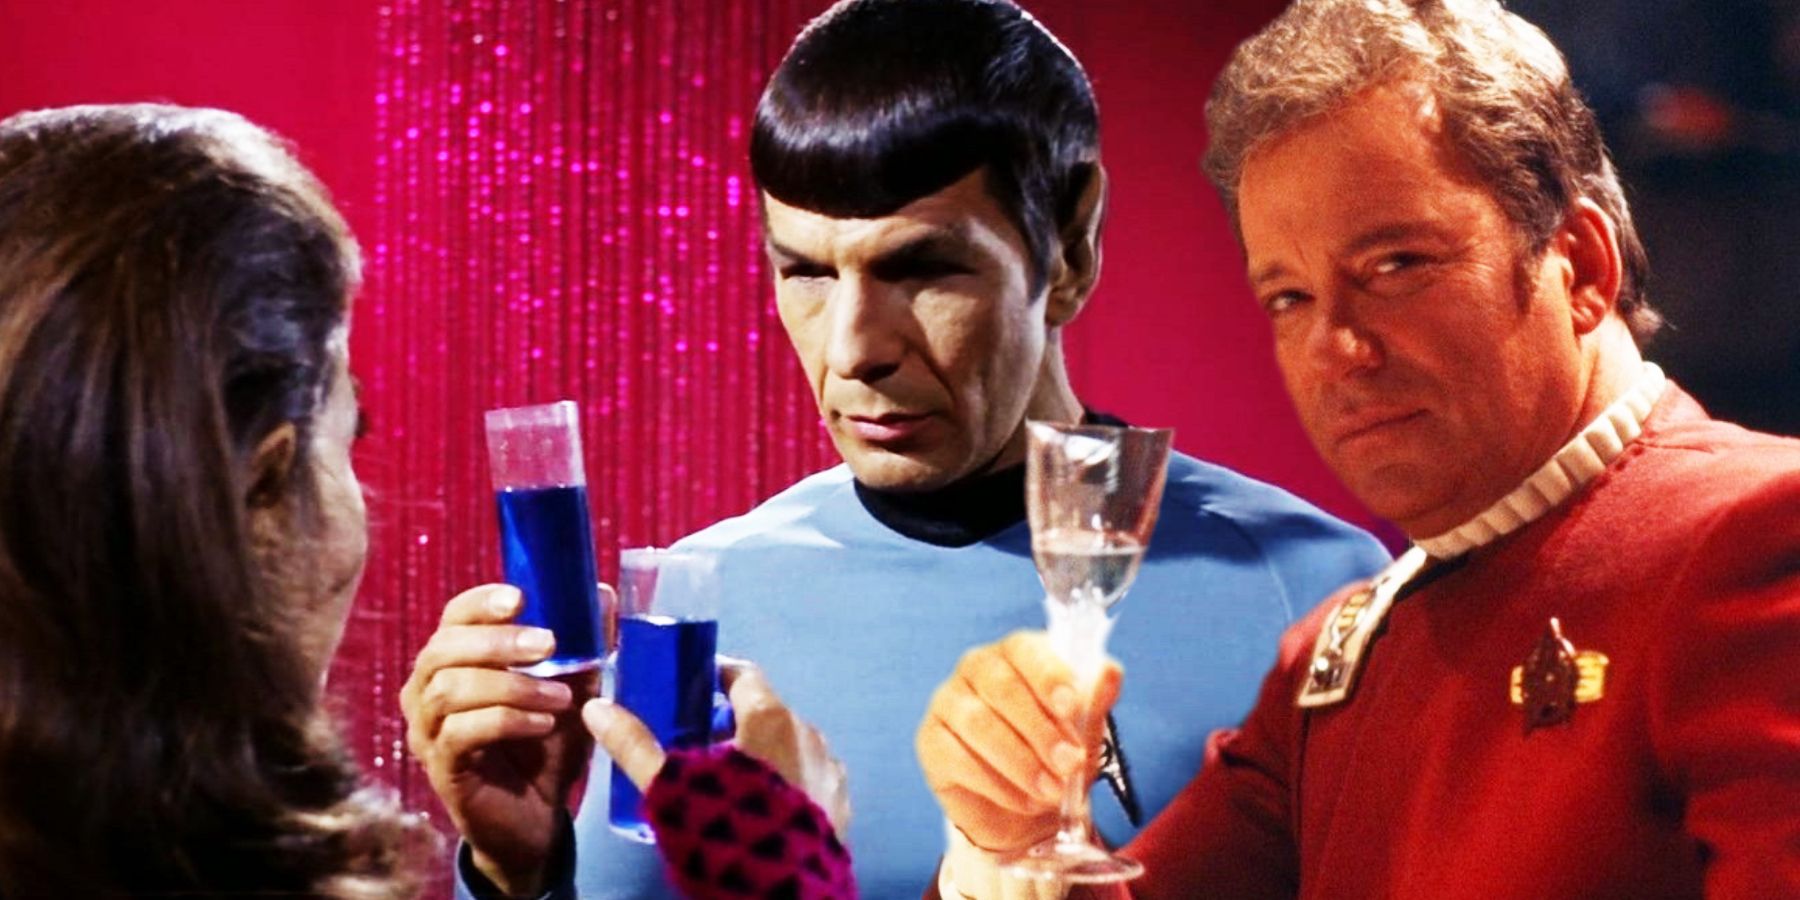 Romulan ale in Star Trek: The Original Series